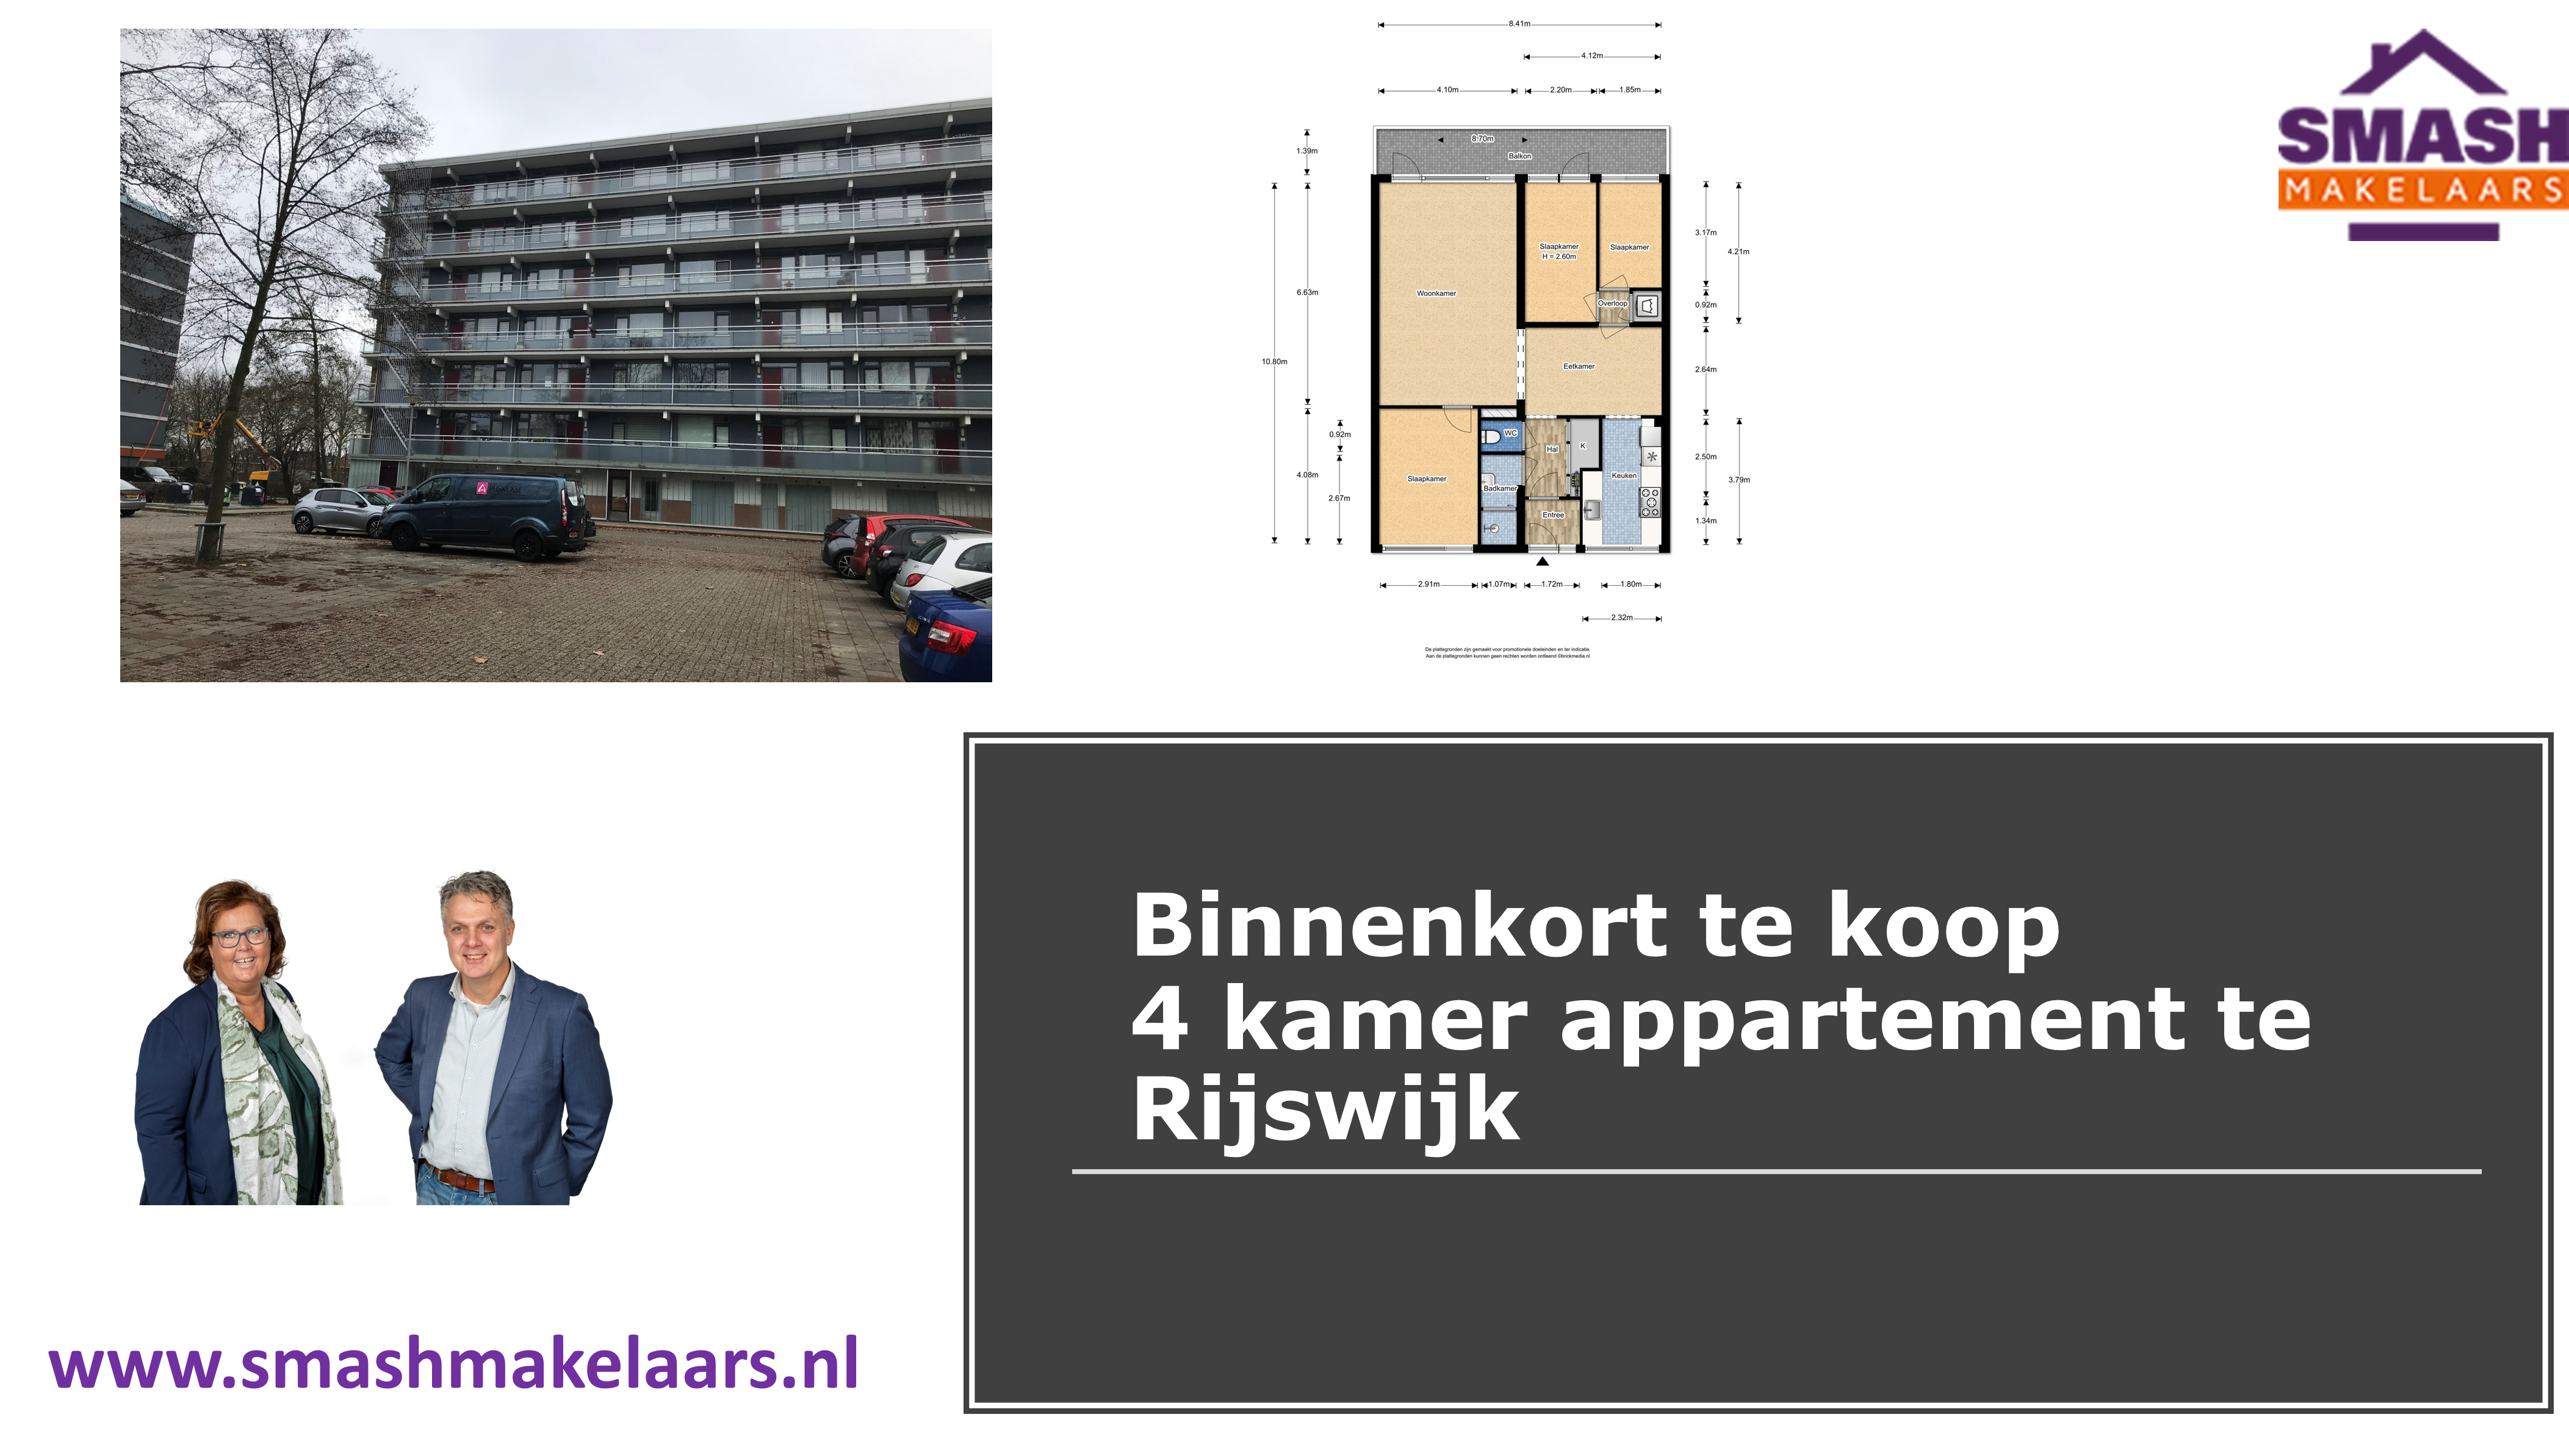 4 kamer appartement te Rijswijk te koop. SMASH makelaars de makelaar van Rijswijk. Opzoek naar een makelaar in Rijswijk? Neem contact met ons op.